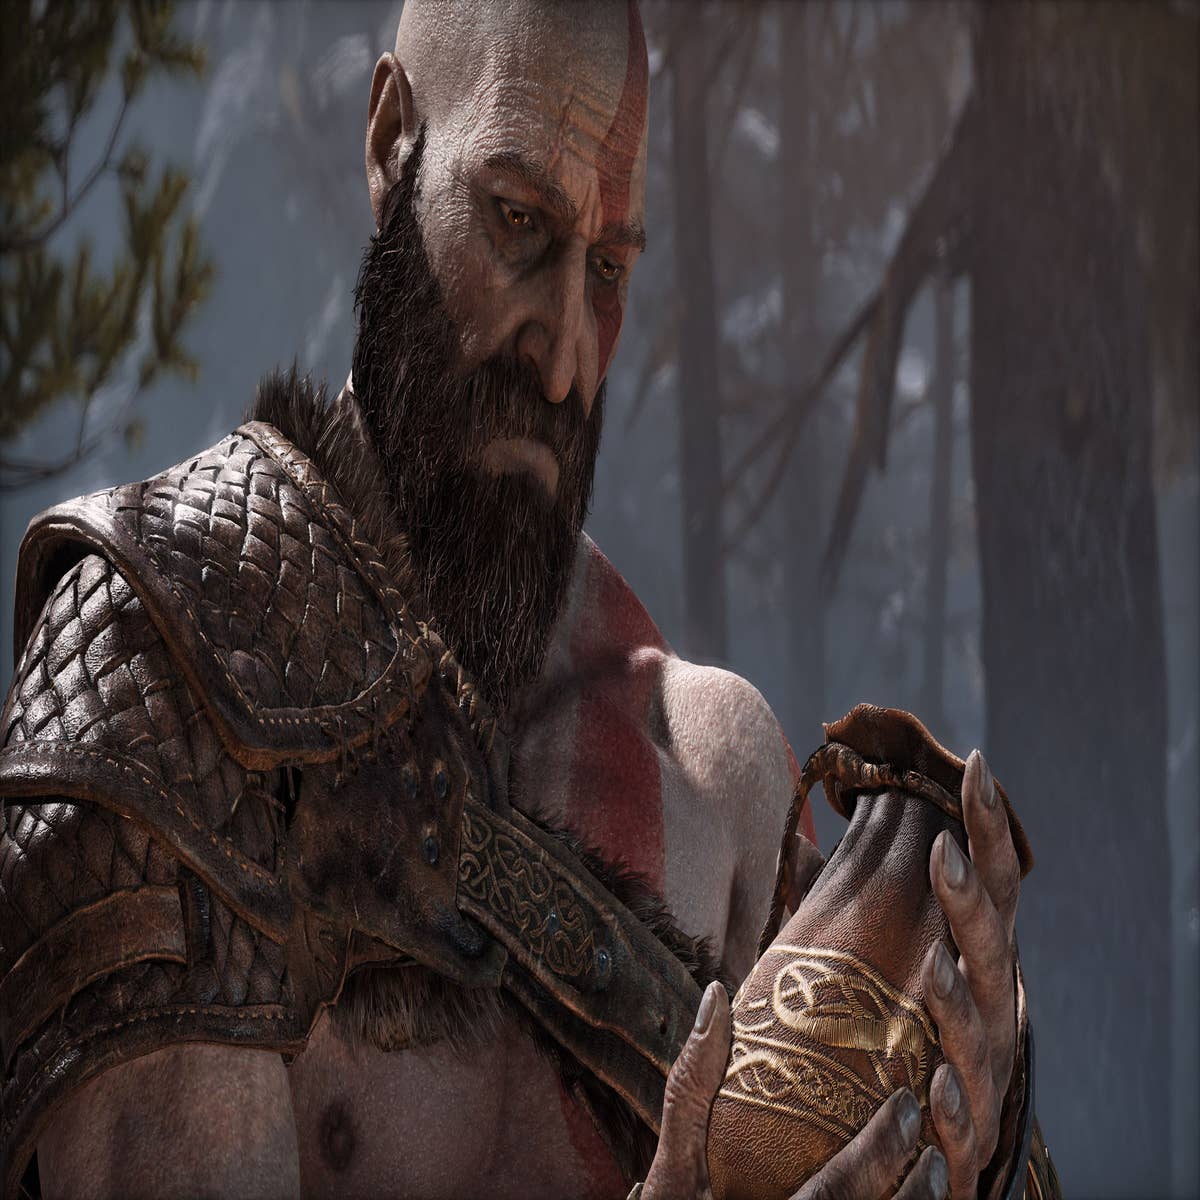 God of War: Ragnarok tem data de lançamento e trailer revelados